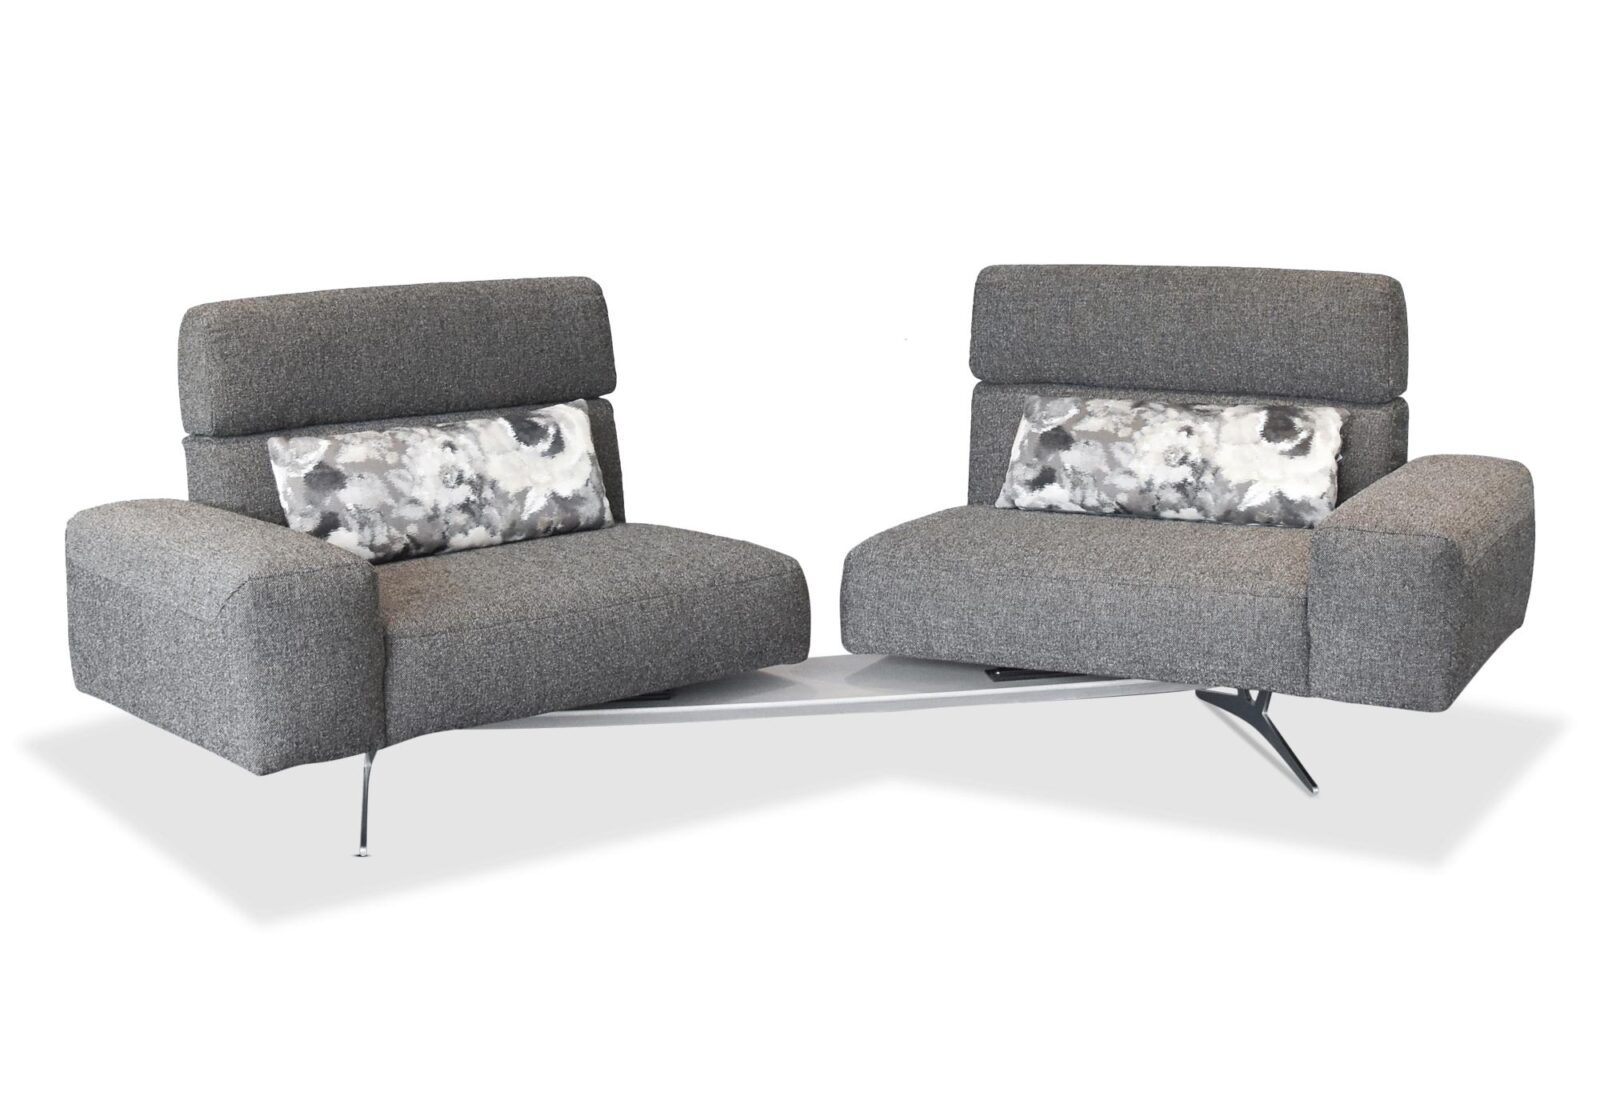 3er Sofa Monroe mit Drehstopp. Bezug: Stoff. Farbe: Grau. Erhältlich bei Möbel Gallati.